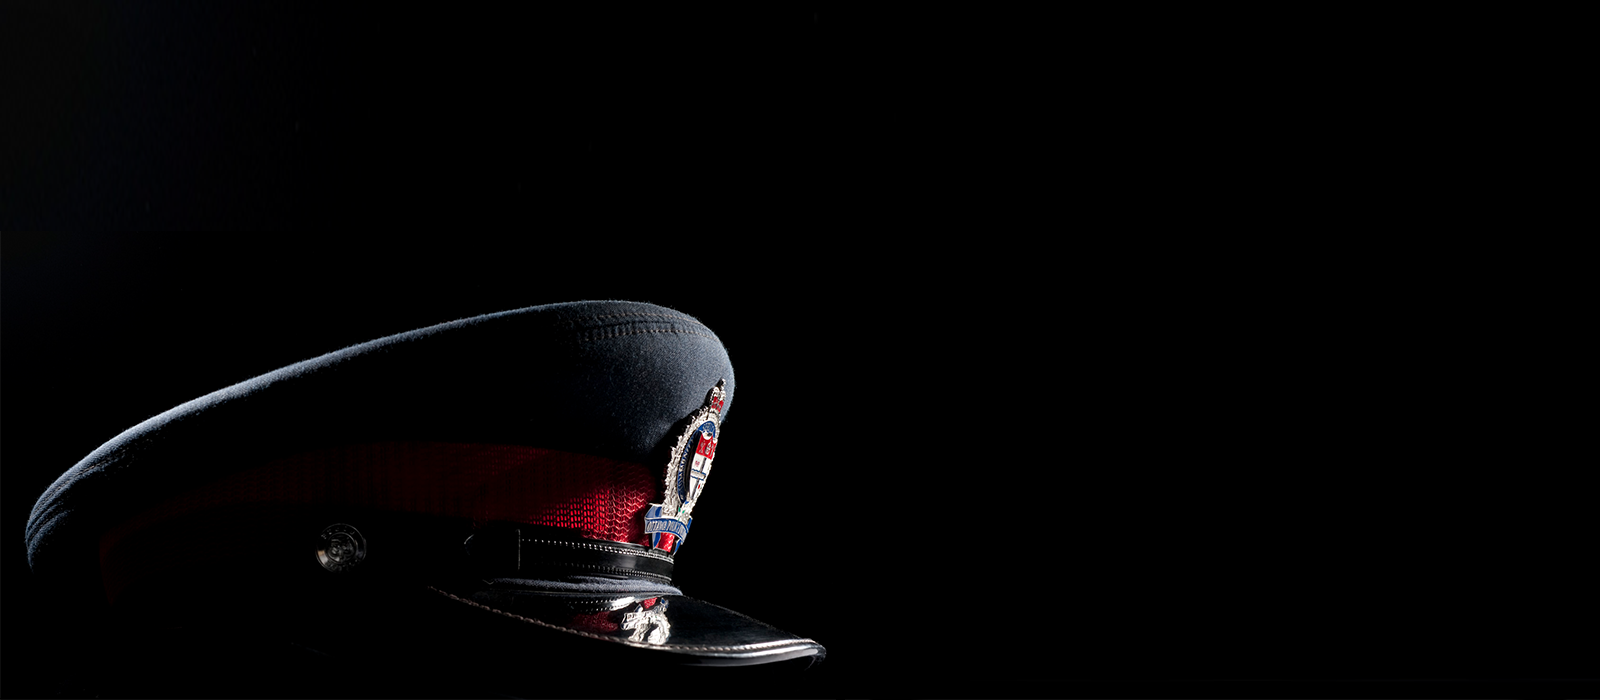 Une image du chapeau fourreau d'un membre du Service de police d'Ottawa